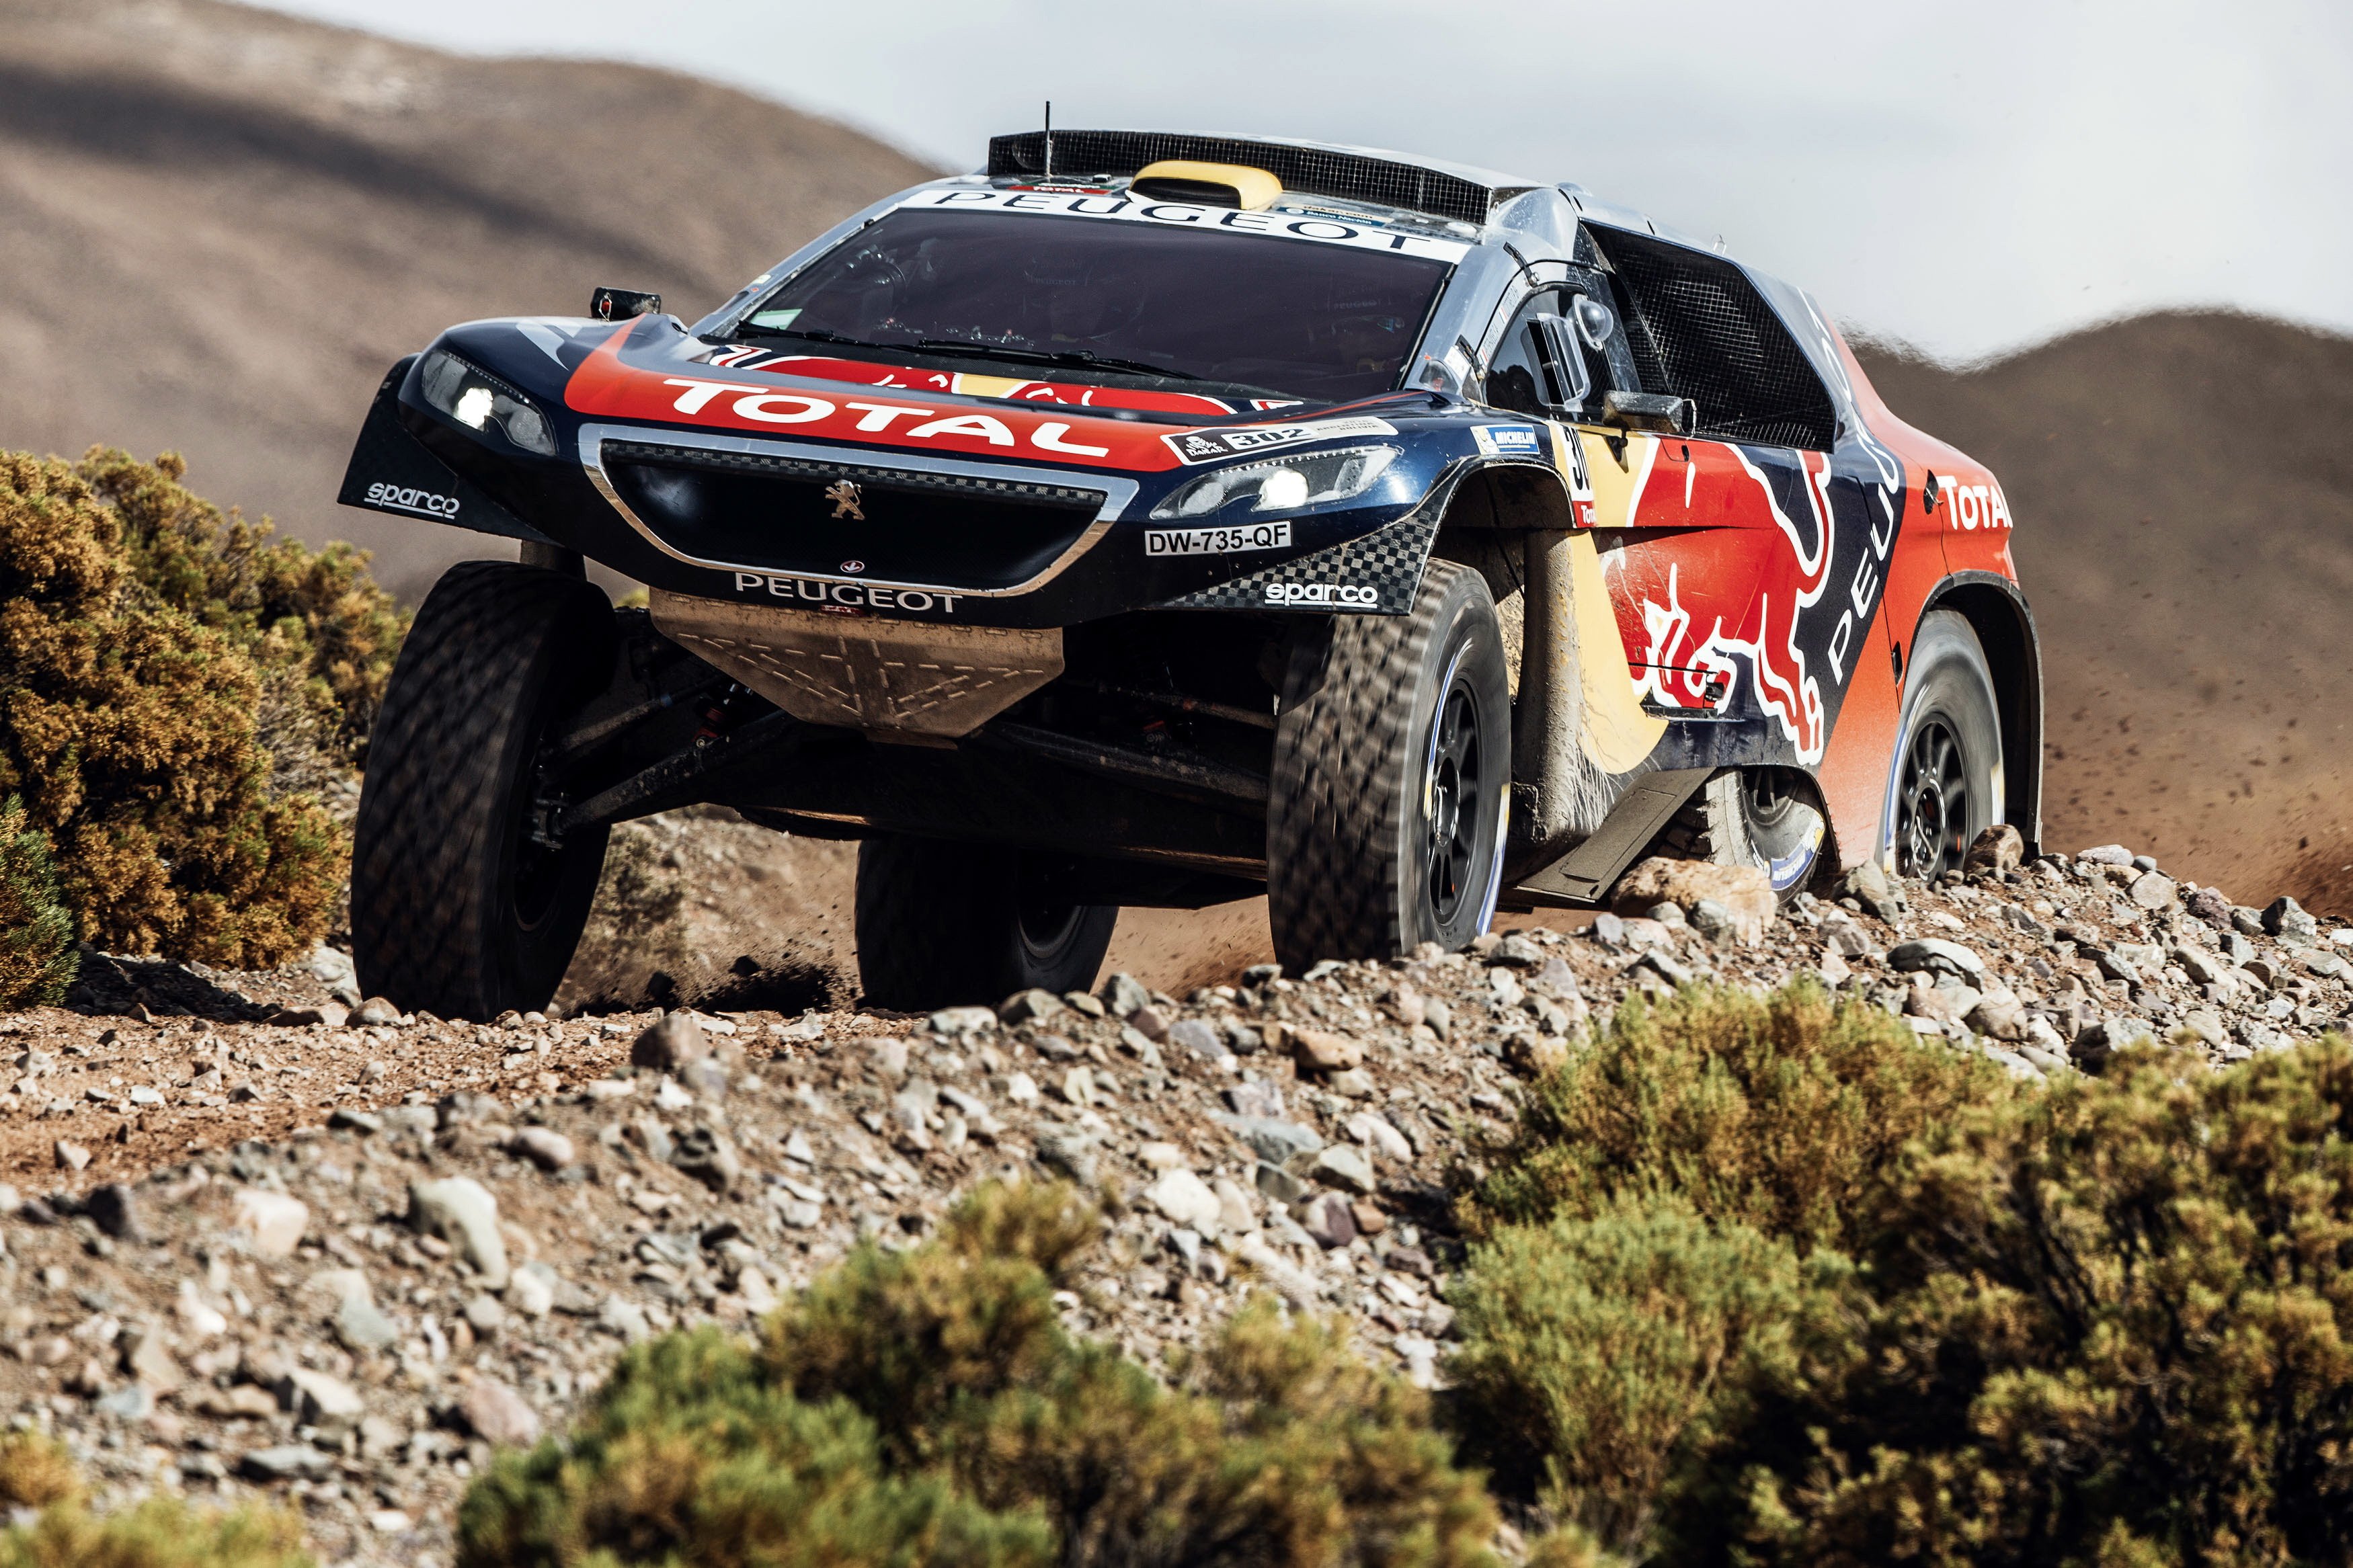 2016, Peugeot, 2008, Dkr16, Dakar, Rally, Race, Racing, Desert, Offroad Wallpaper